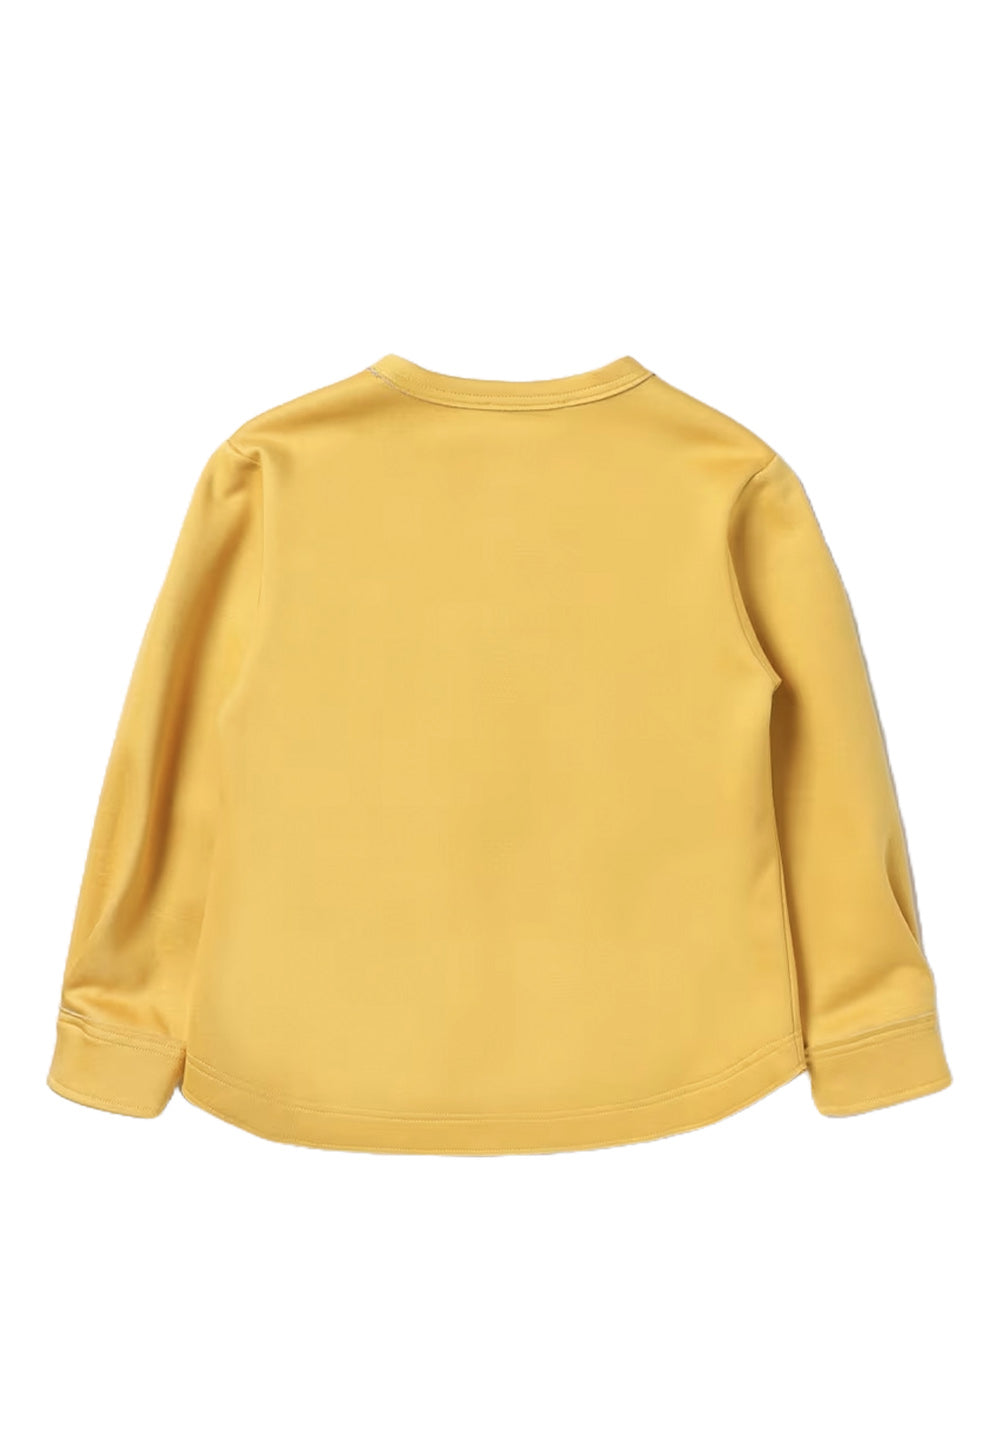 Yellow crewneck sweatshirt for girls